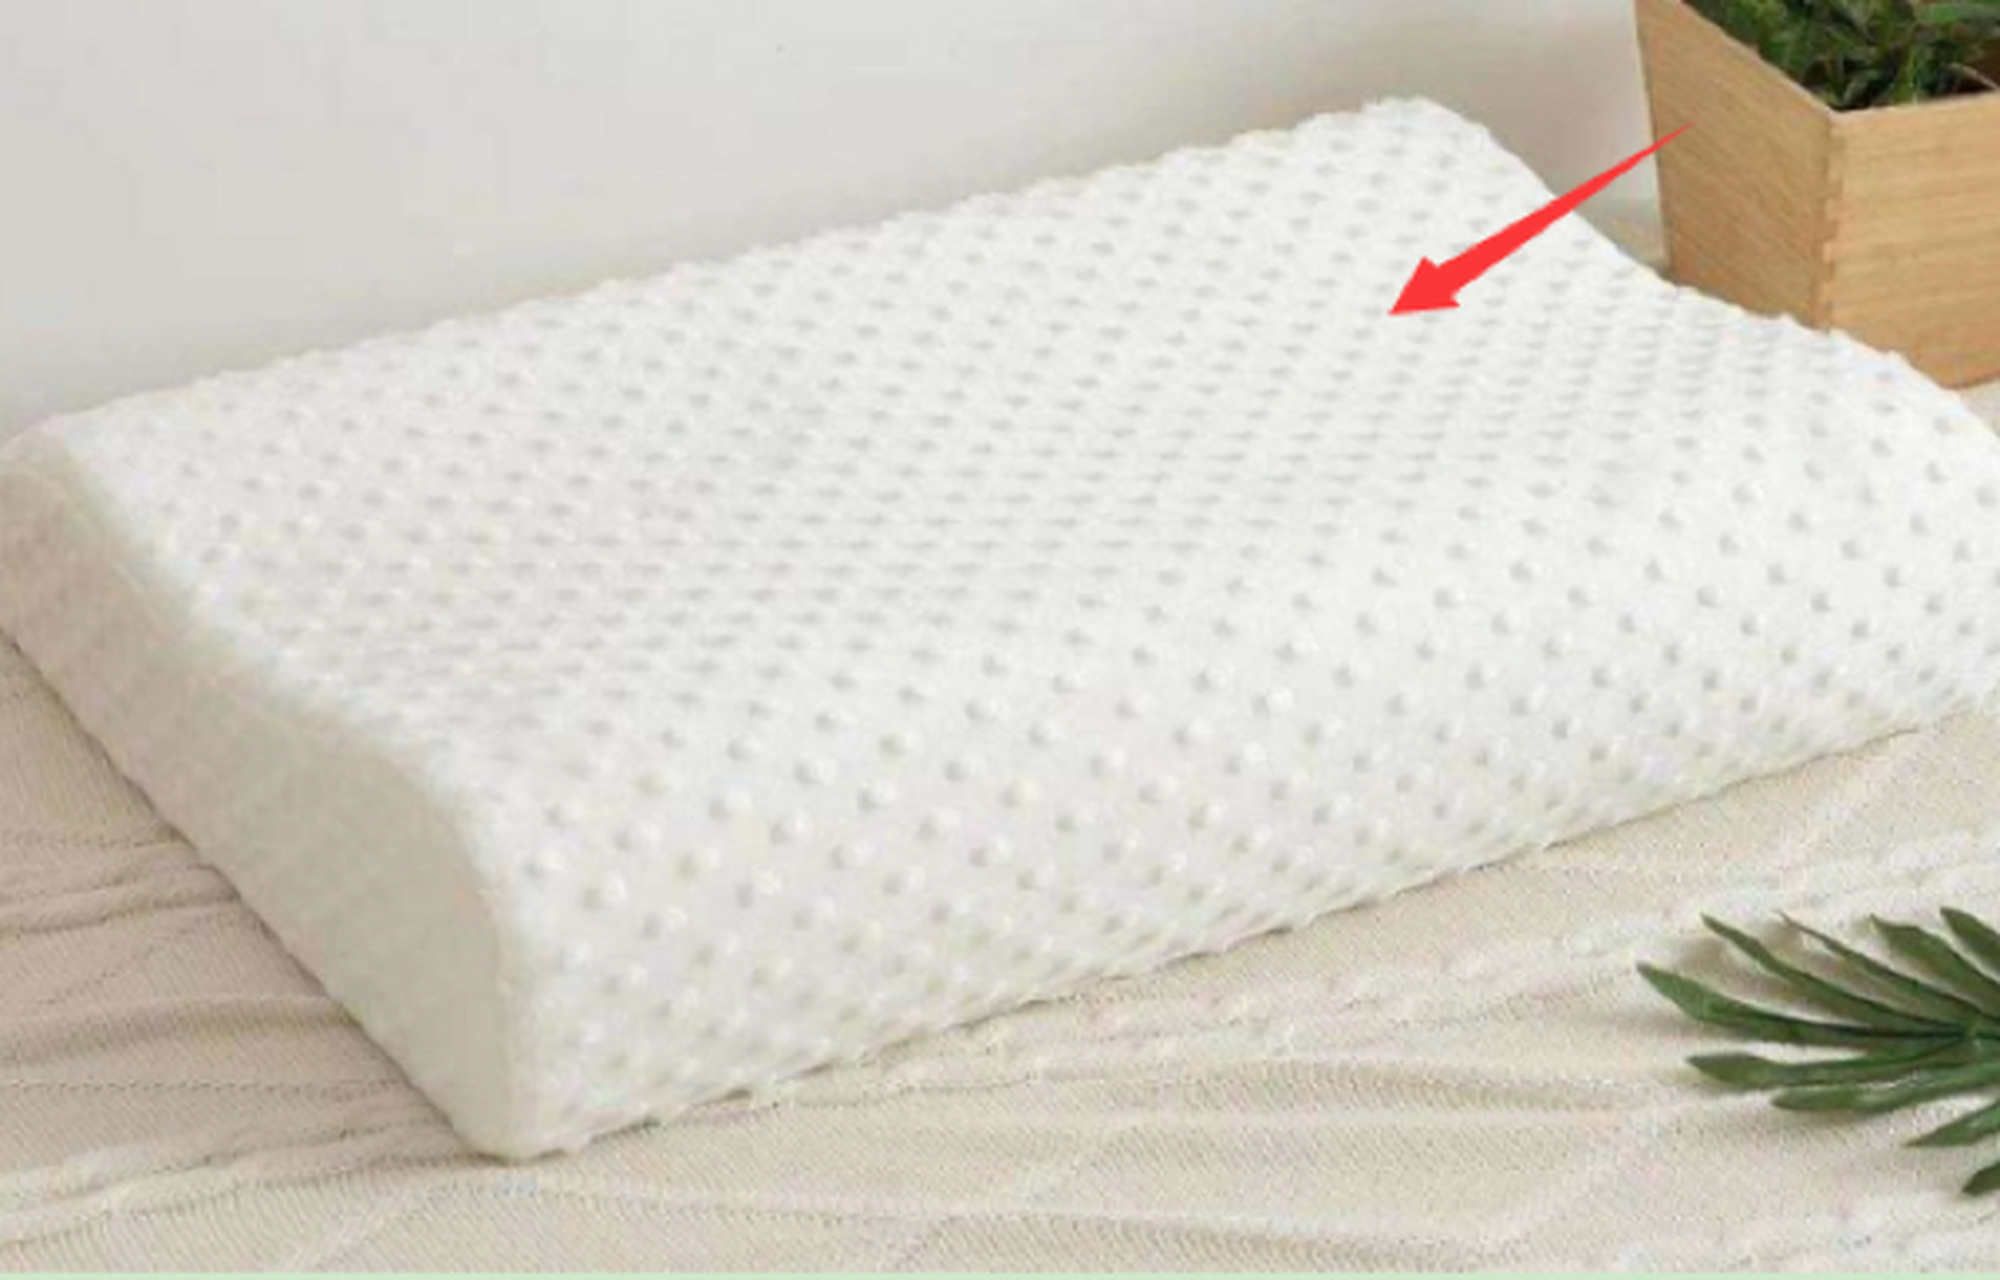 乳胶枕头正确高低睡法图片